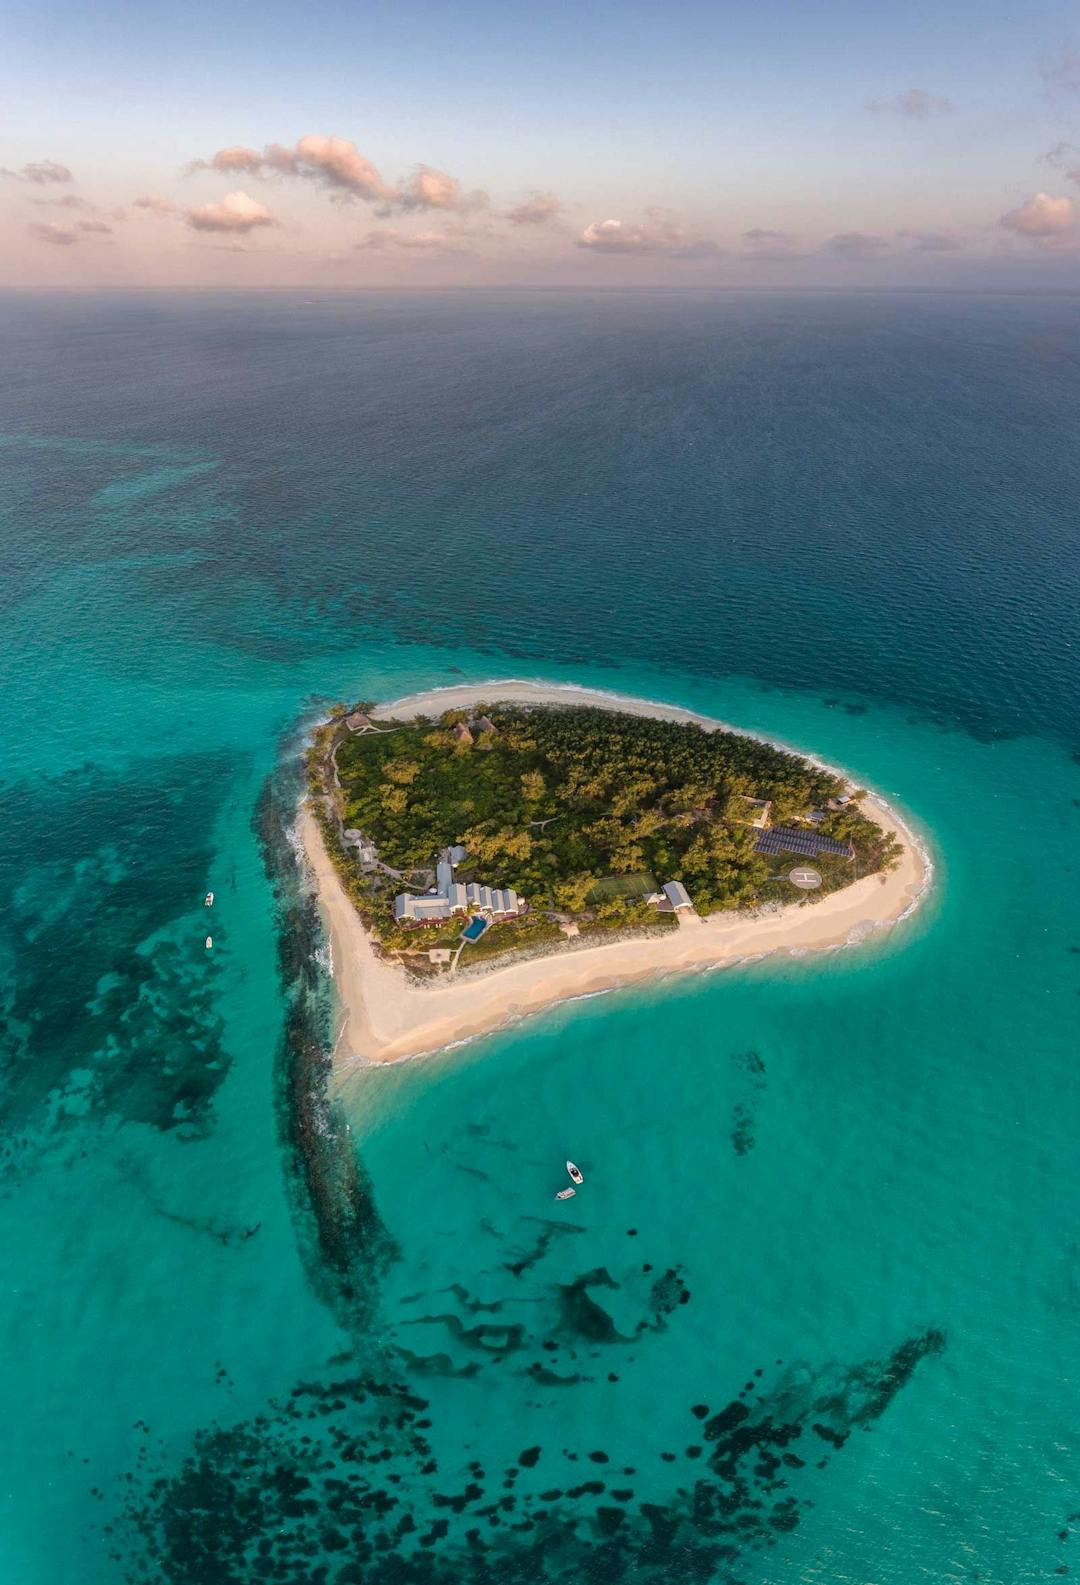 Thanda Private Island, Tanzania